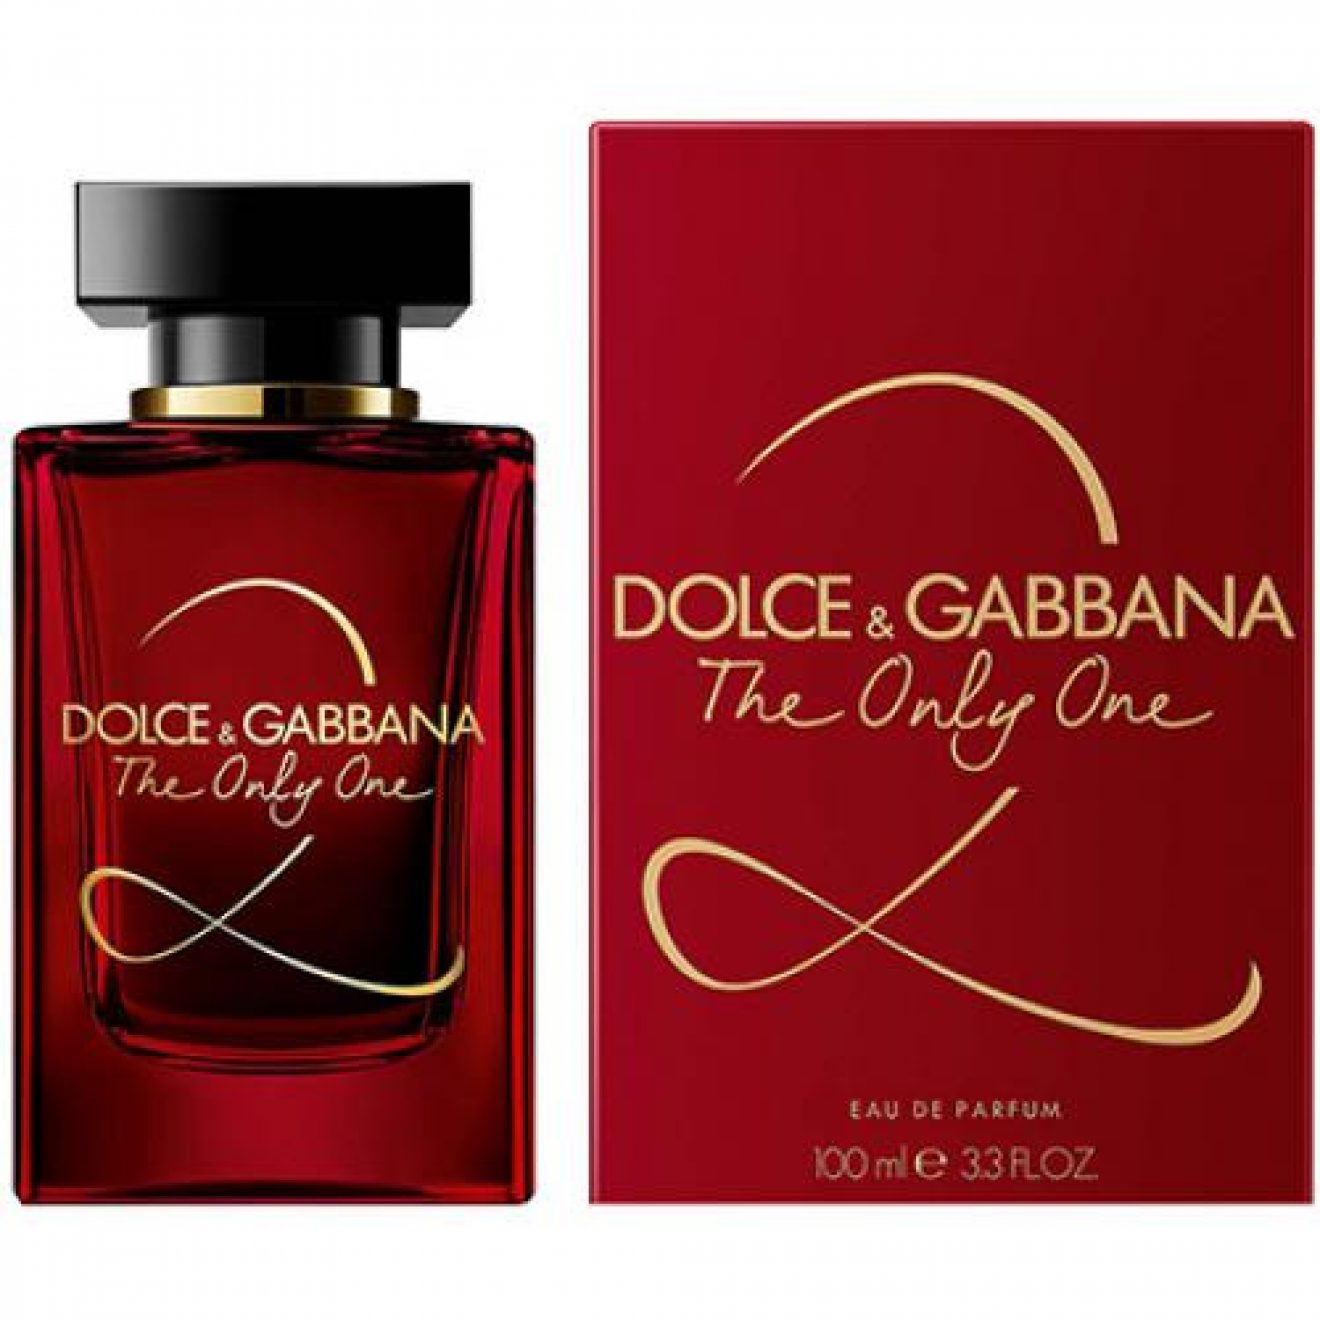 Дольче габбана ван цена. Dolce Gabbana the only one 2 100 мл. Dolce & Gabbana the only one, EDP., 100 ml. Аромат Dolce Gabbana the only one 2 красный. Dolce& Gabbana the only one 2 EDP, 100 ml.